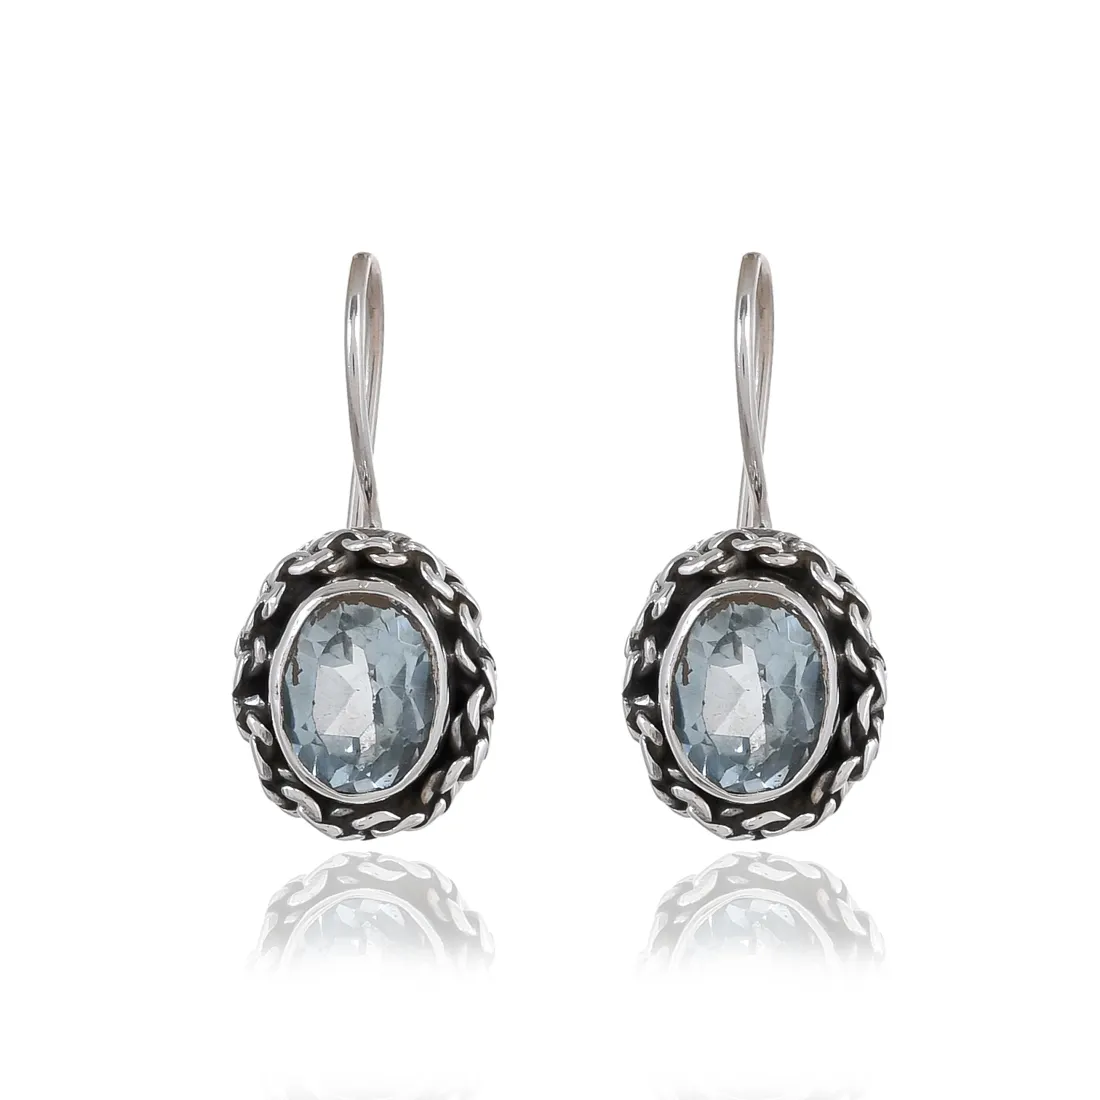 Silver Earrings Online Sterling Silver Jewelry beste kaufen Sterling Silver Earrings